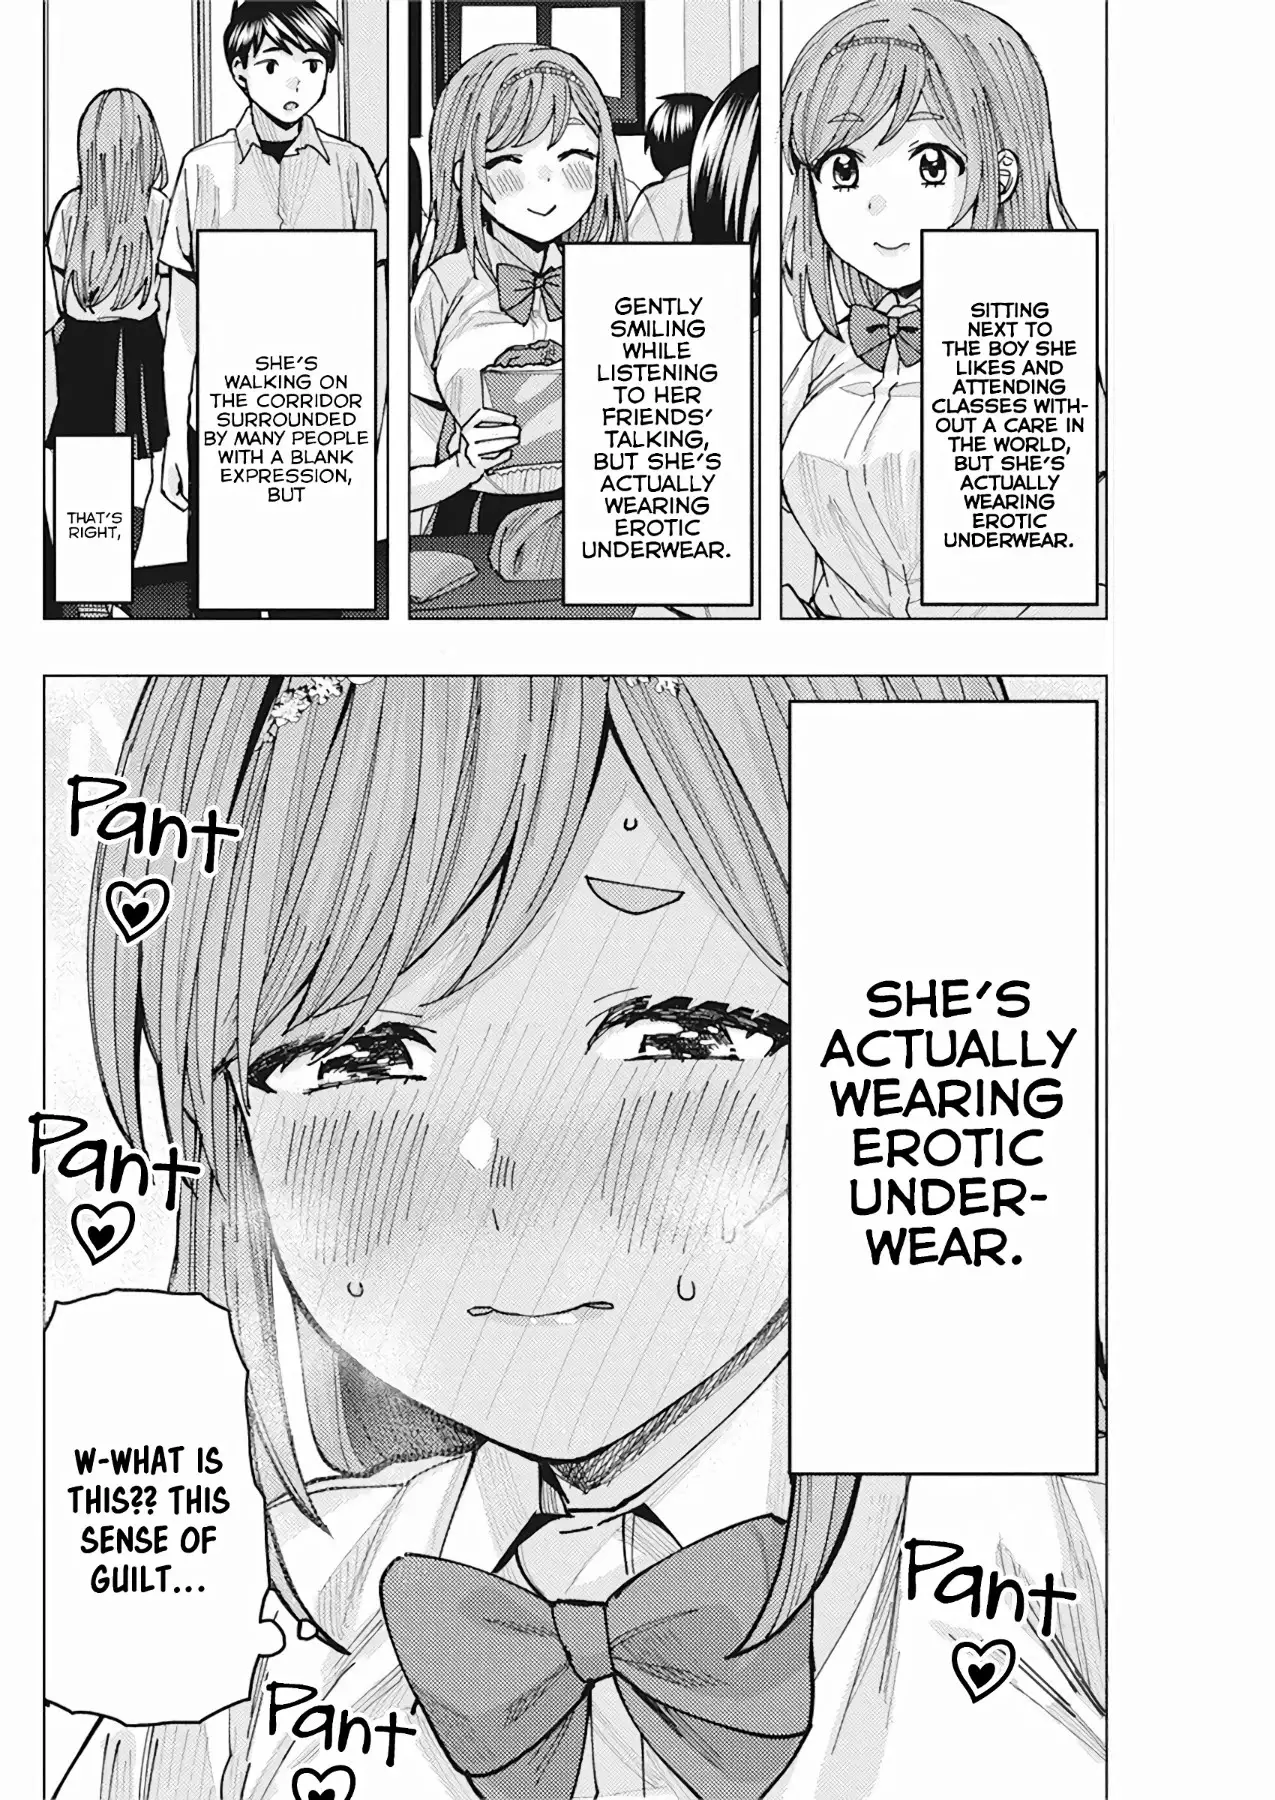 "nobukuni-San" Does She Like Me? - 8 page 9-e777a490